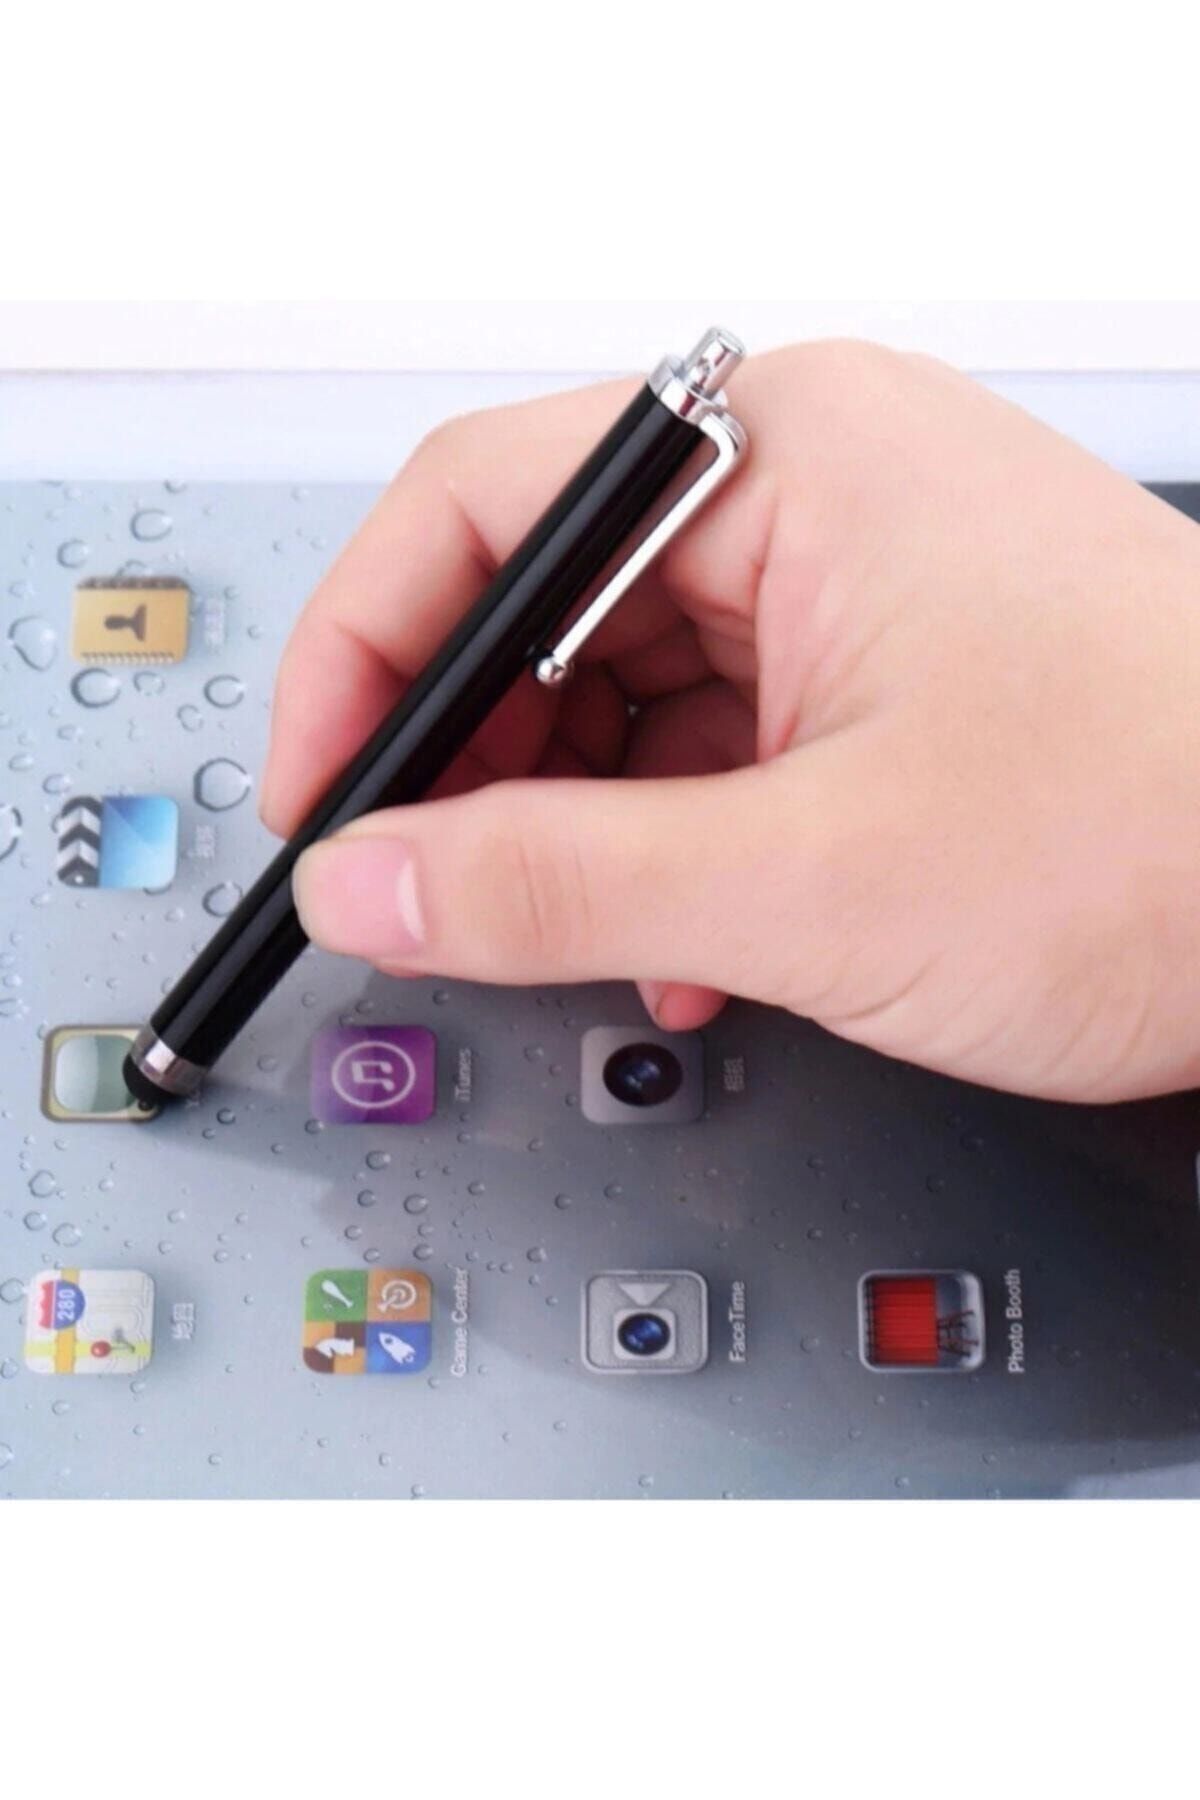 AQUA AKSESUAR Dokunmatik Kalem - Tüm Telefonlar & Akıllı Tahta & Tablet & Dokunmatik Ekranlara Uyumlu